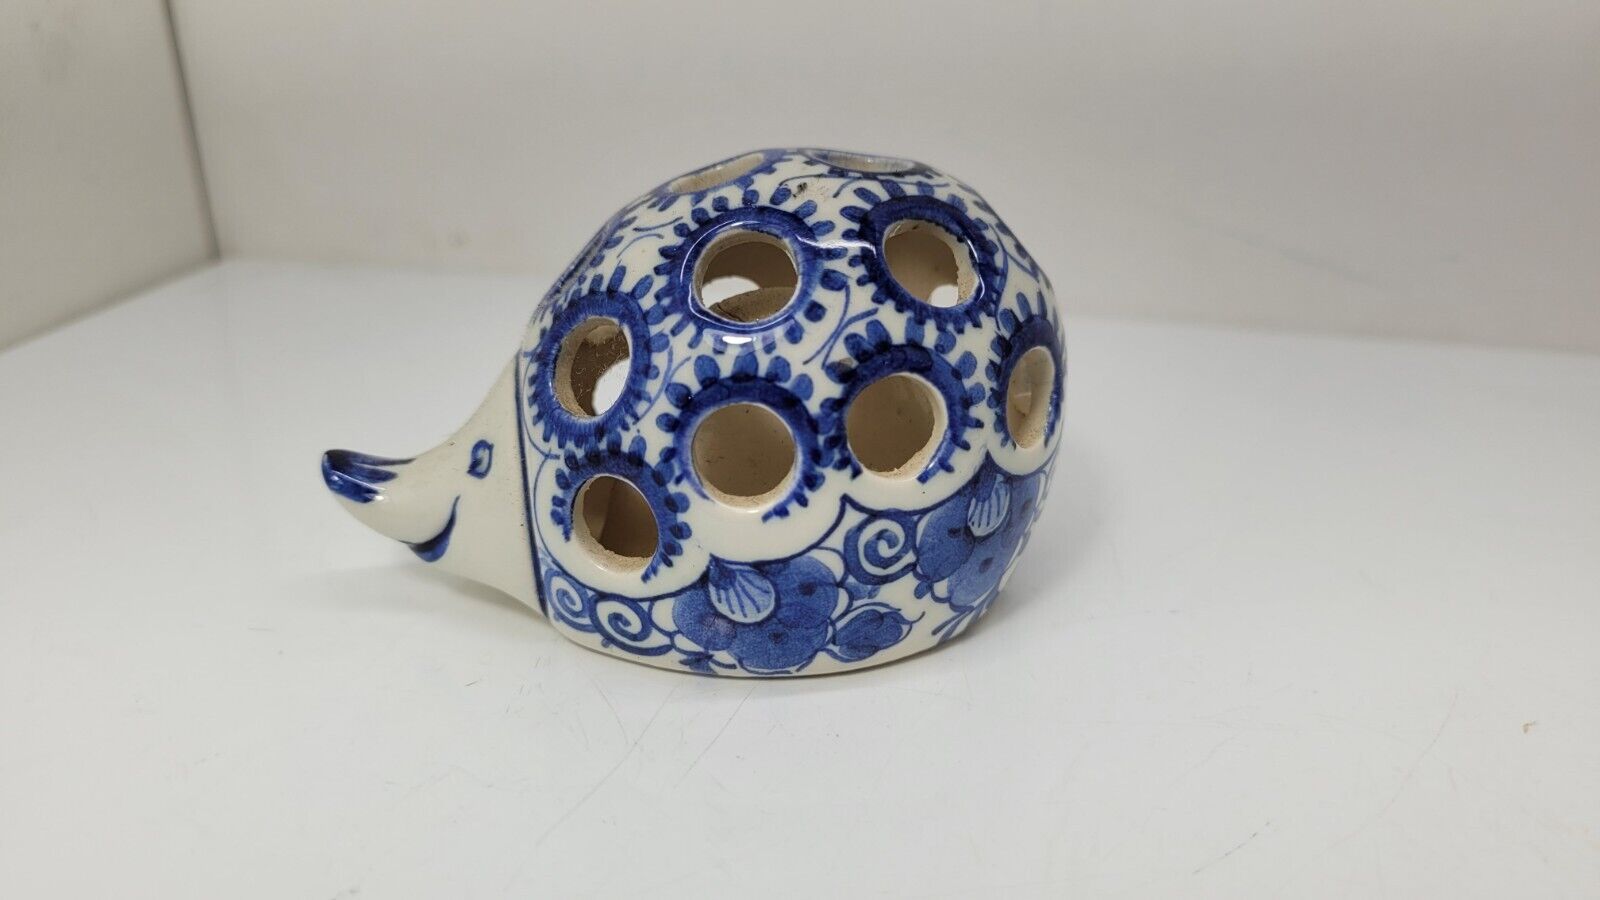 Delft Hedgehog Flower Frog Vintage Blue And White Figurine Rare Signed